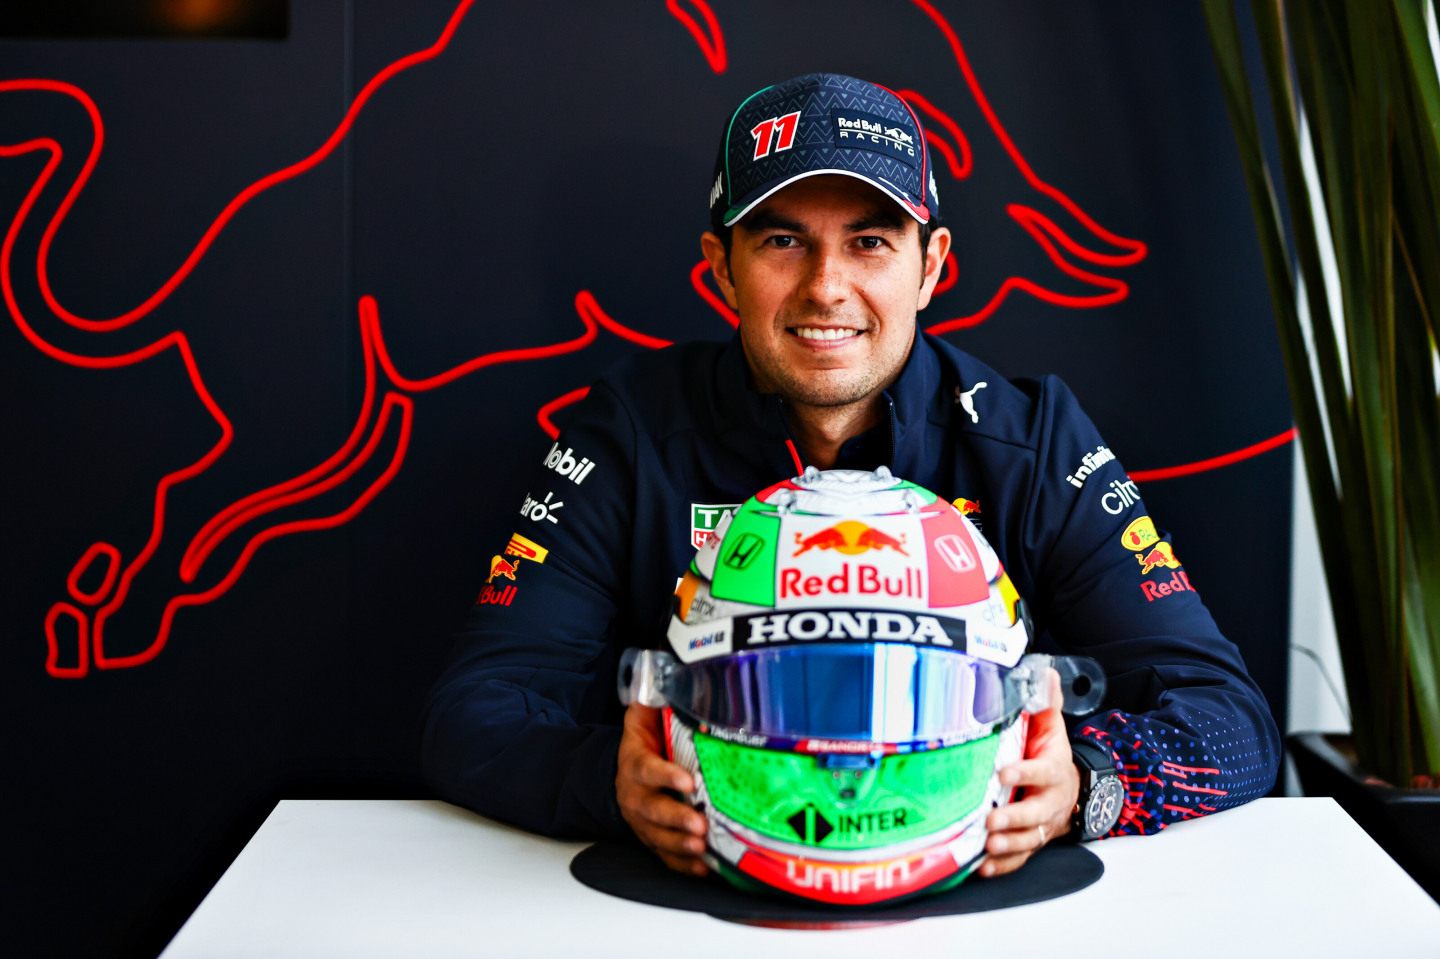 Шлем Серхио Переса на Гран При Мексики © Red Bull Content Pool / Getty Images